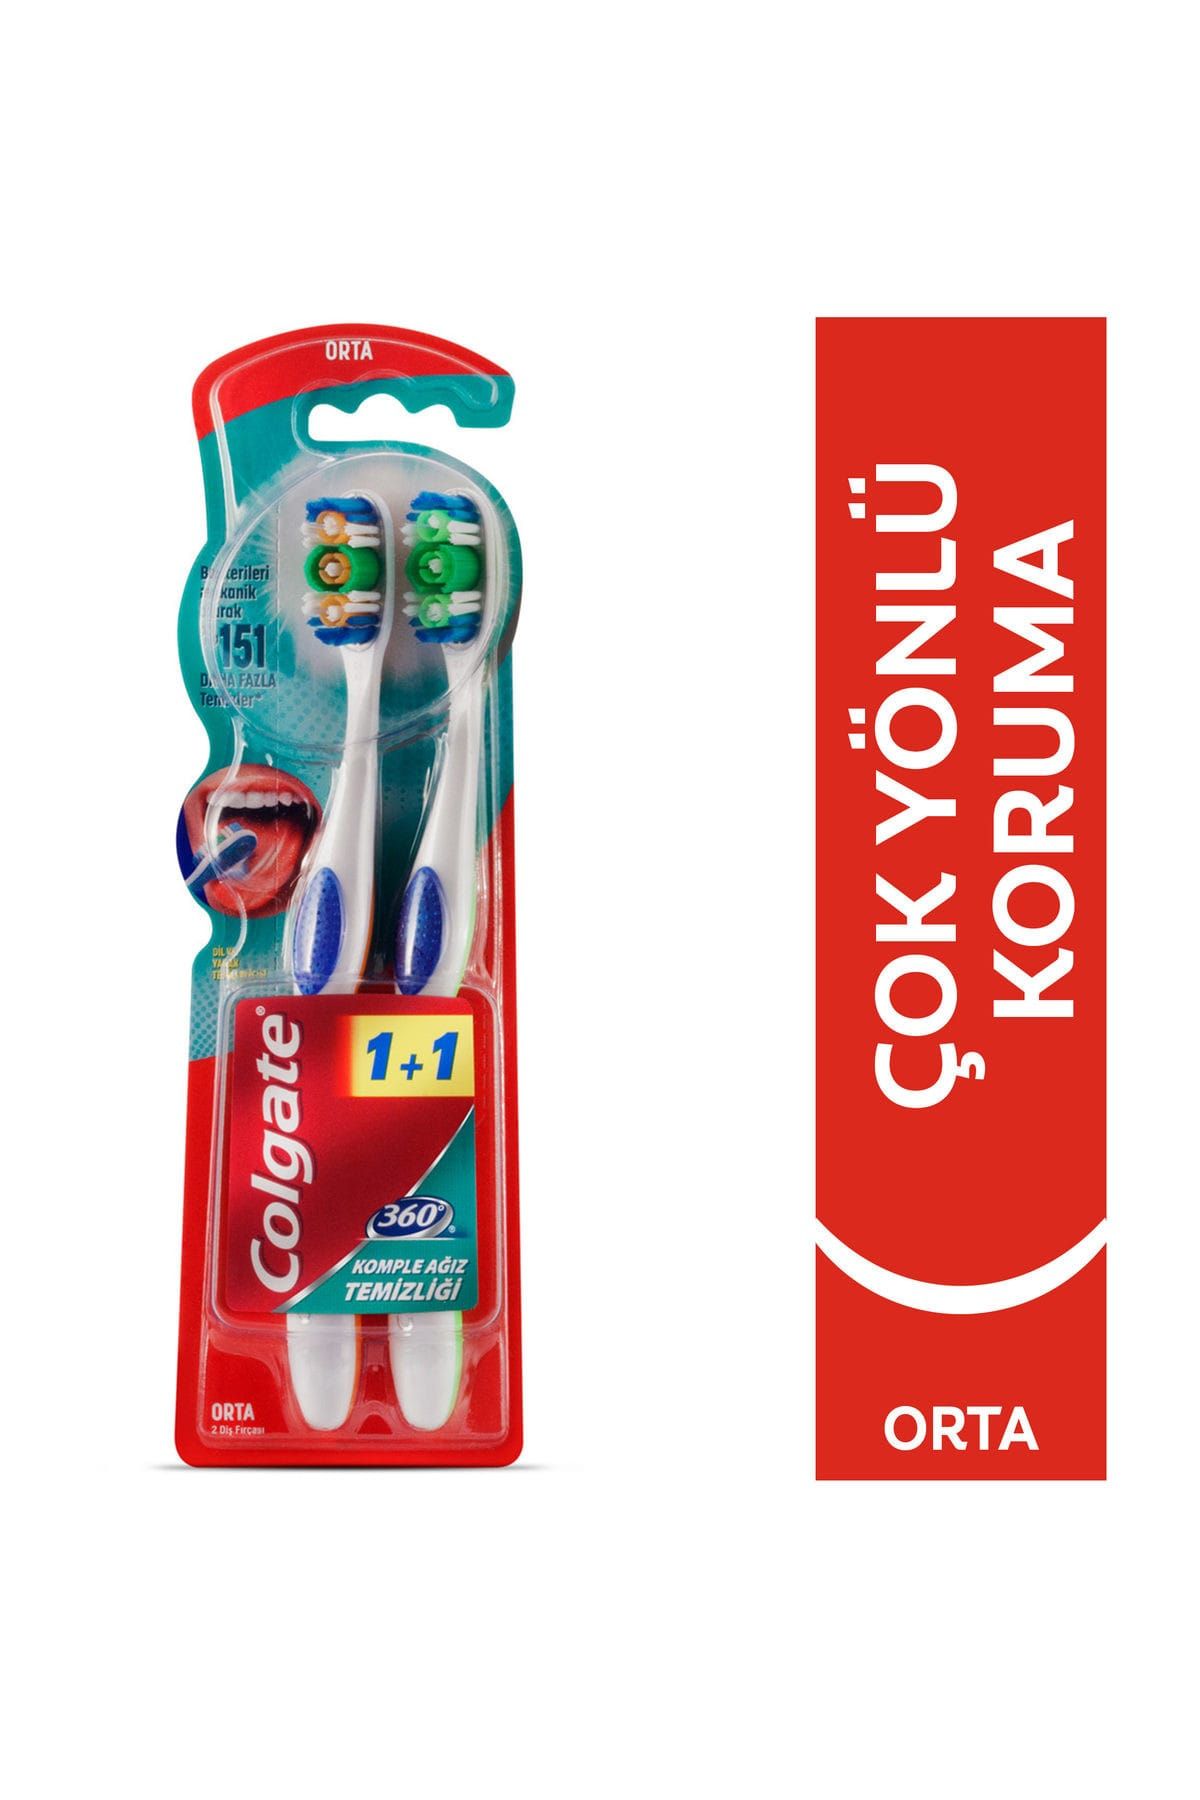 Colgate 360 Komple Ağız Temizliği Orta 1+1 Diş Fırçası